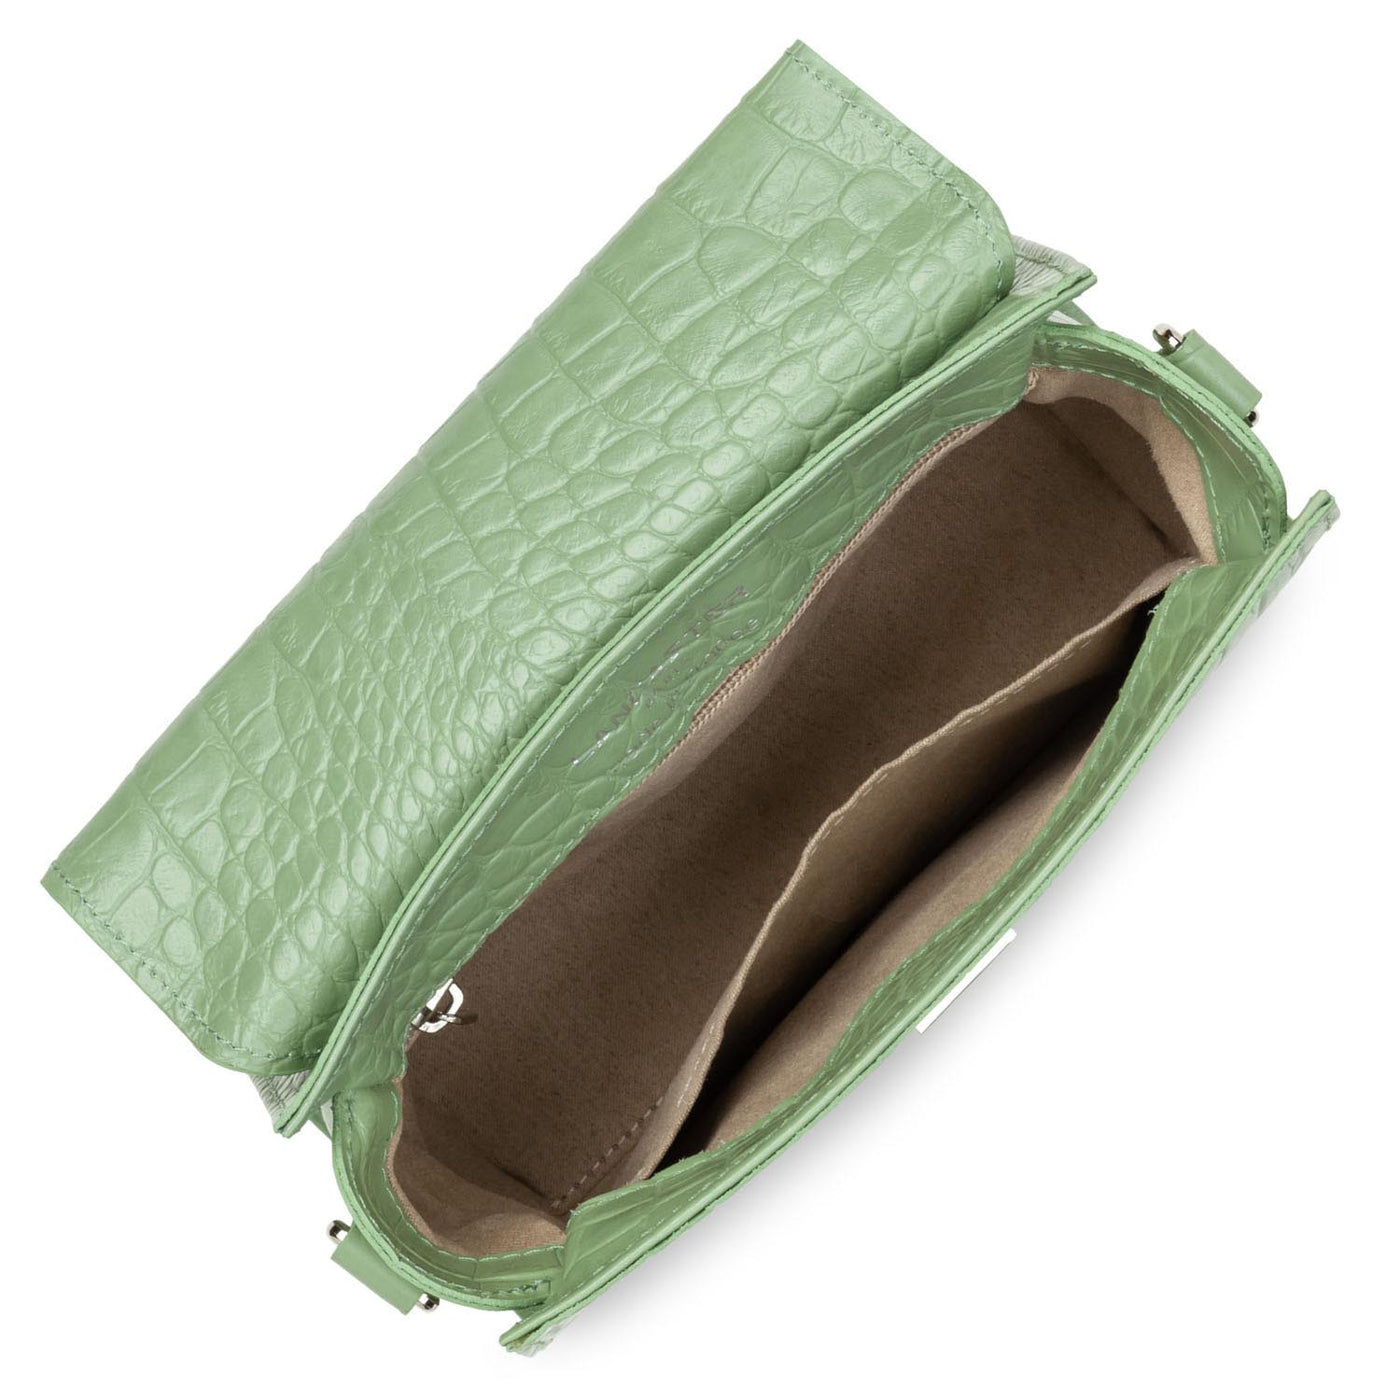 petit sac à main - exotic lézard & croco fr #couleur_jade